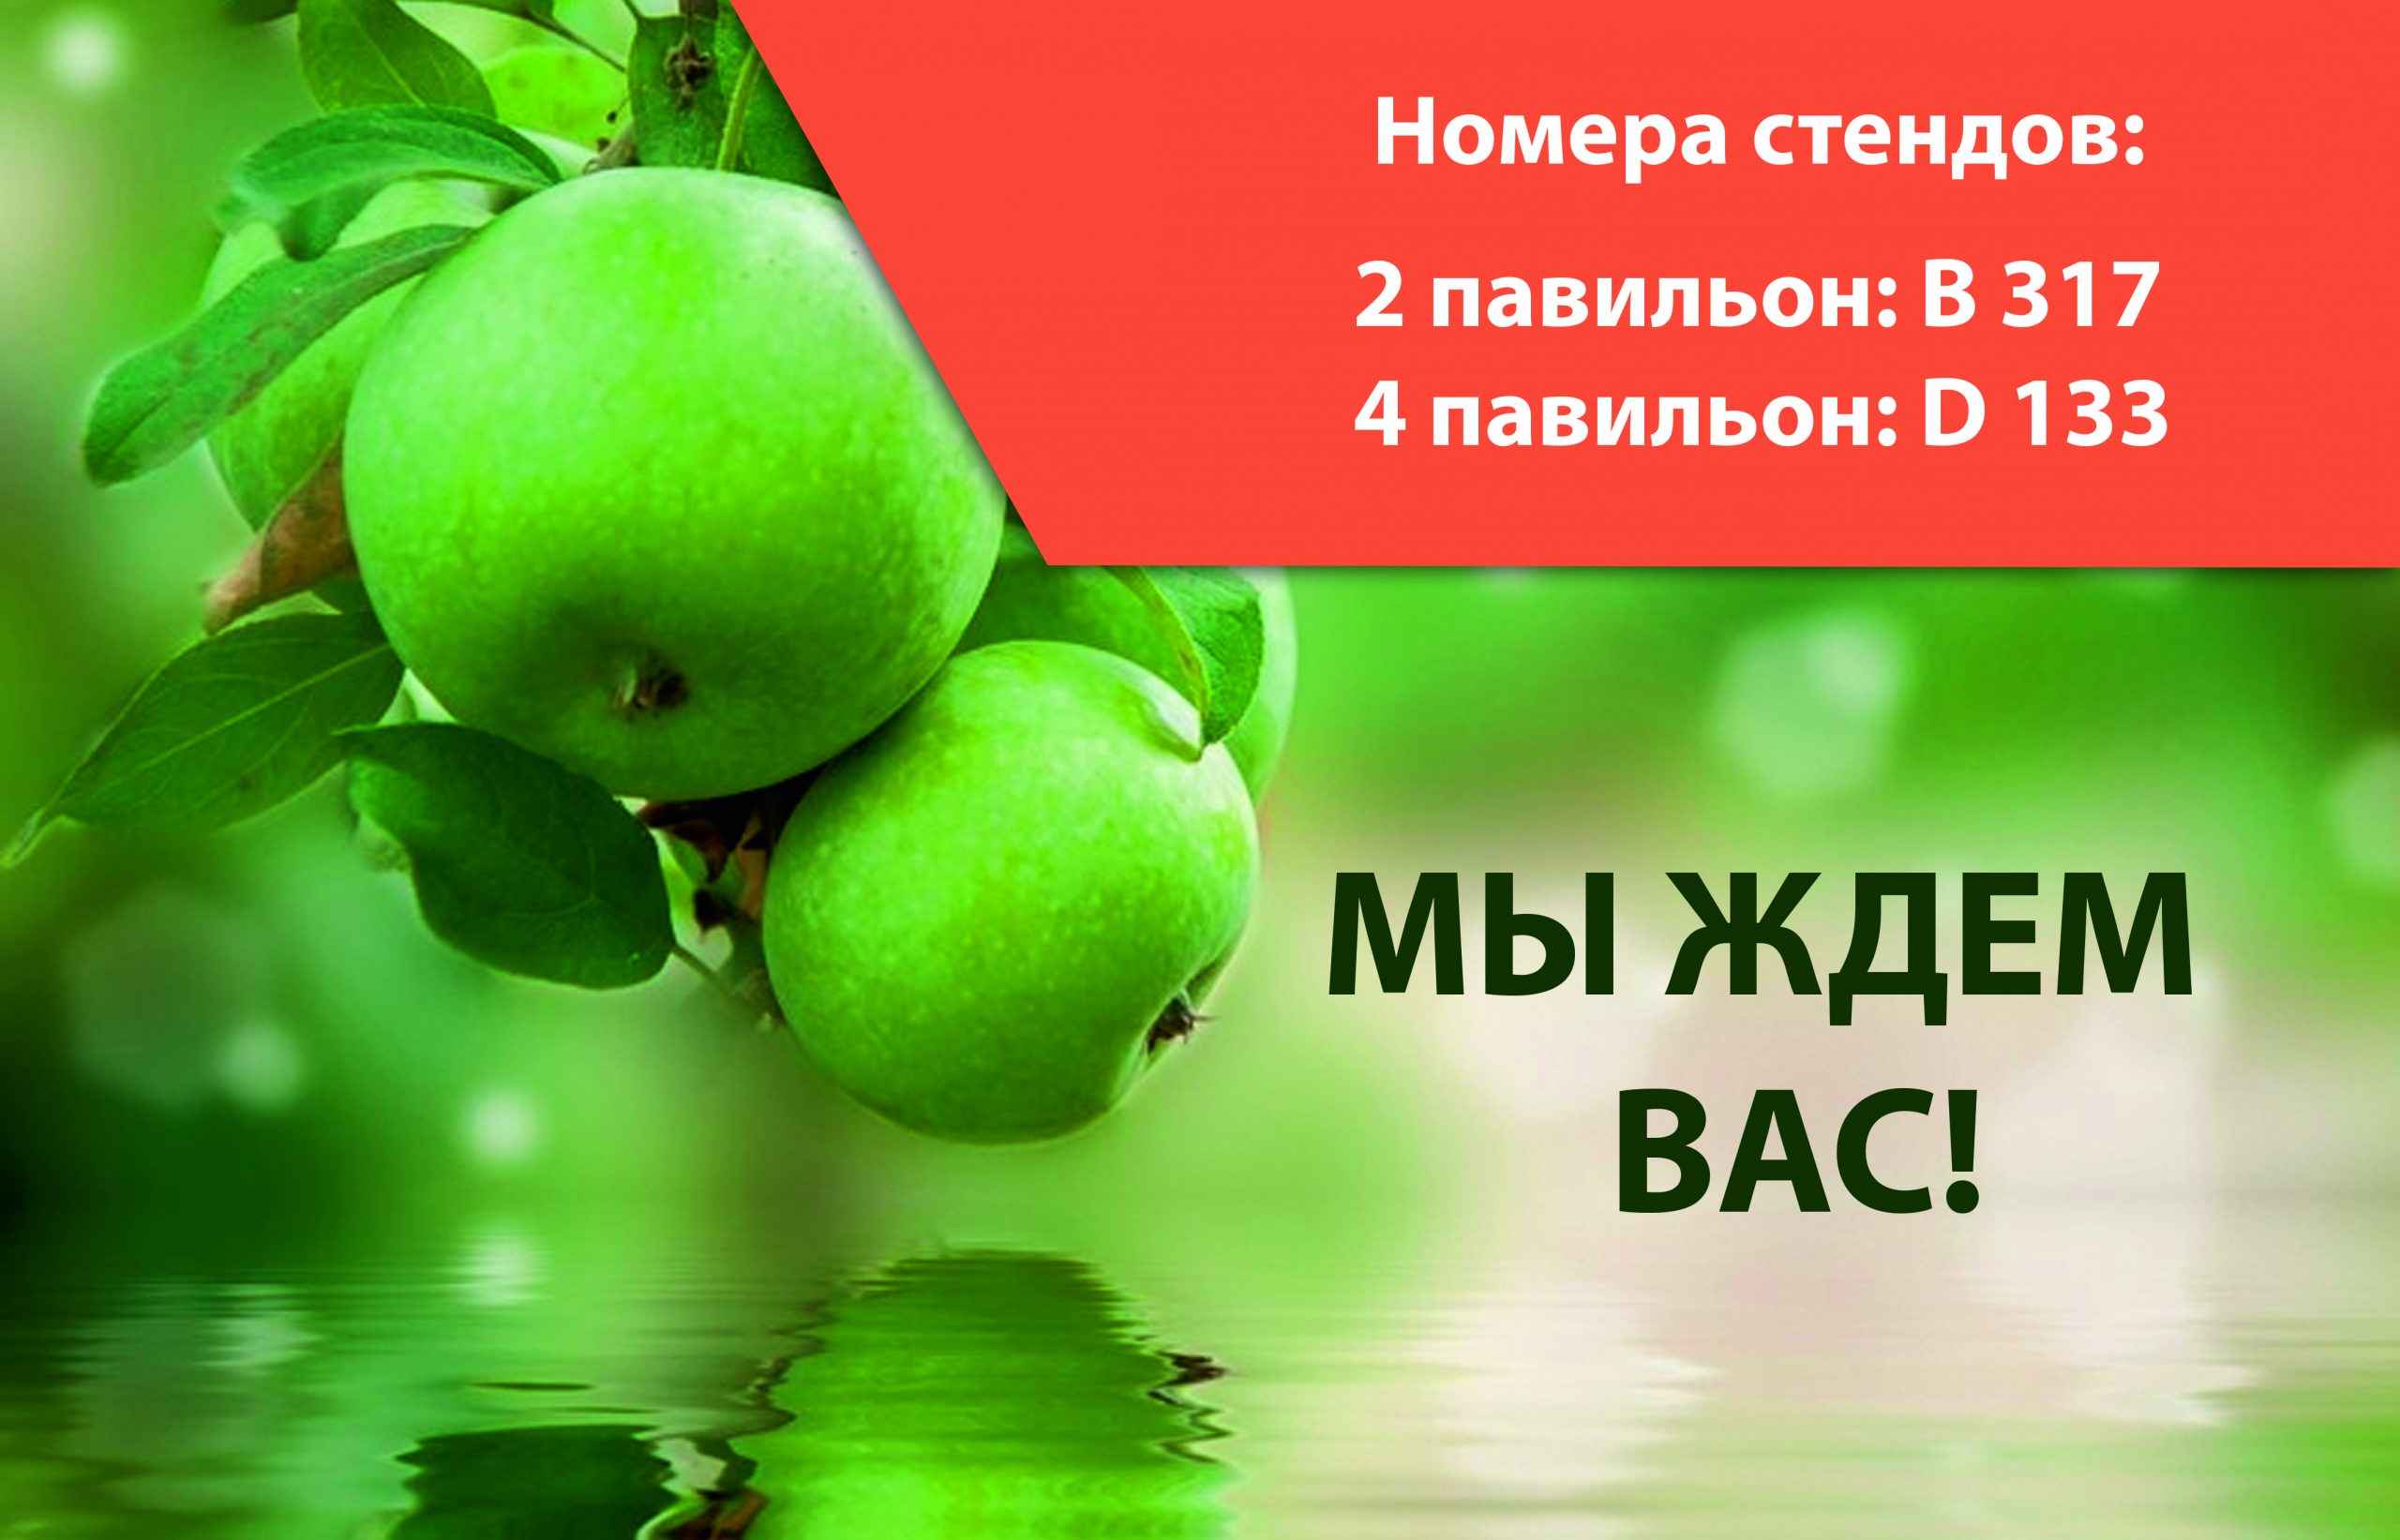 С 23 по 26 ноября в Краснодаре пройдет международная сельскохозяйственная выставка ЮГАГРО 2021.